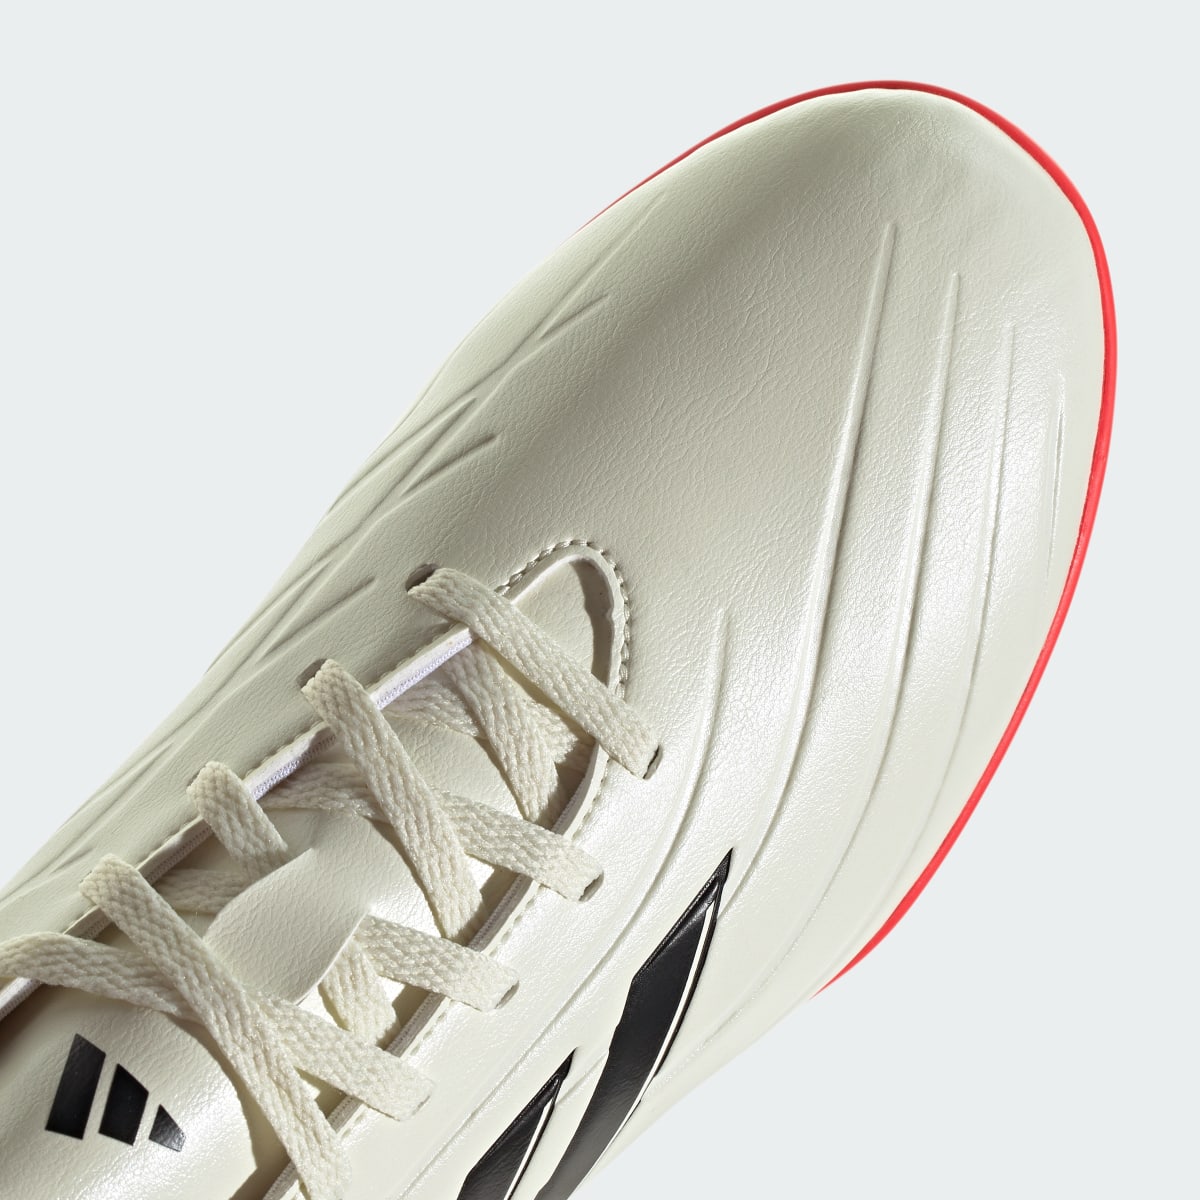 Adidas Copa Pure II Club Turf Boots. 10